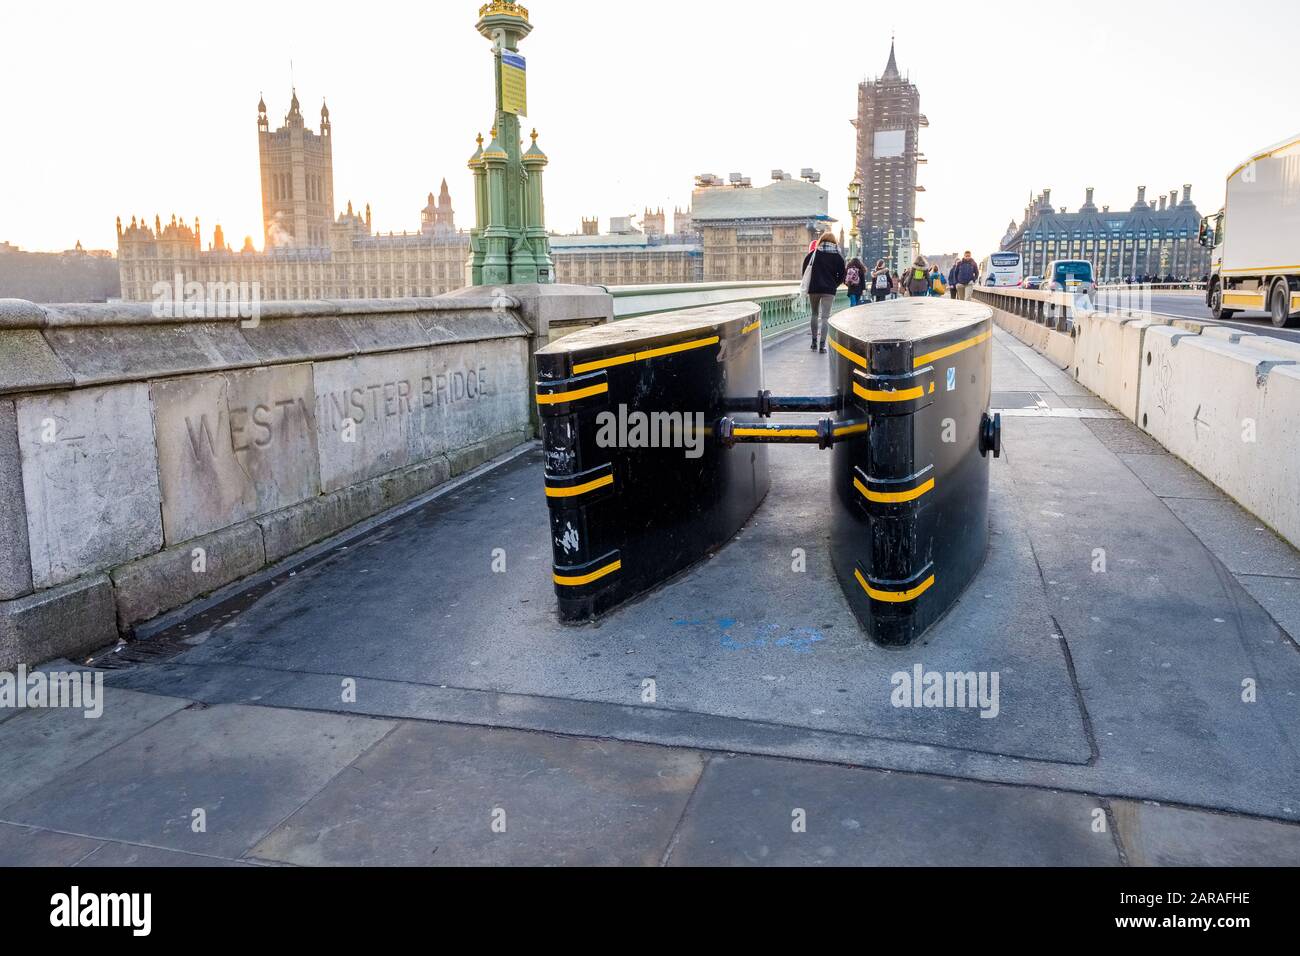 Barrières anti-terroristes sur le pavé au bout du pont Westminster, Londres, Royaume-Uni Banque D'Images